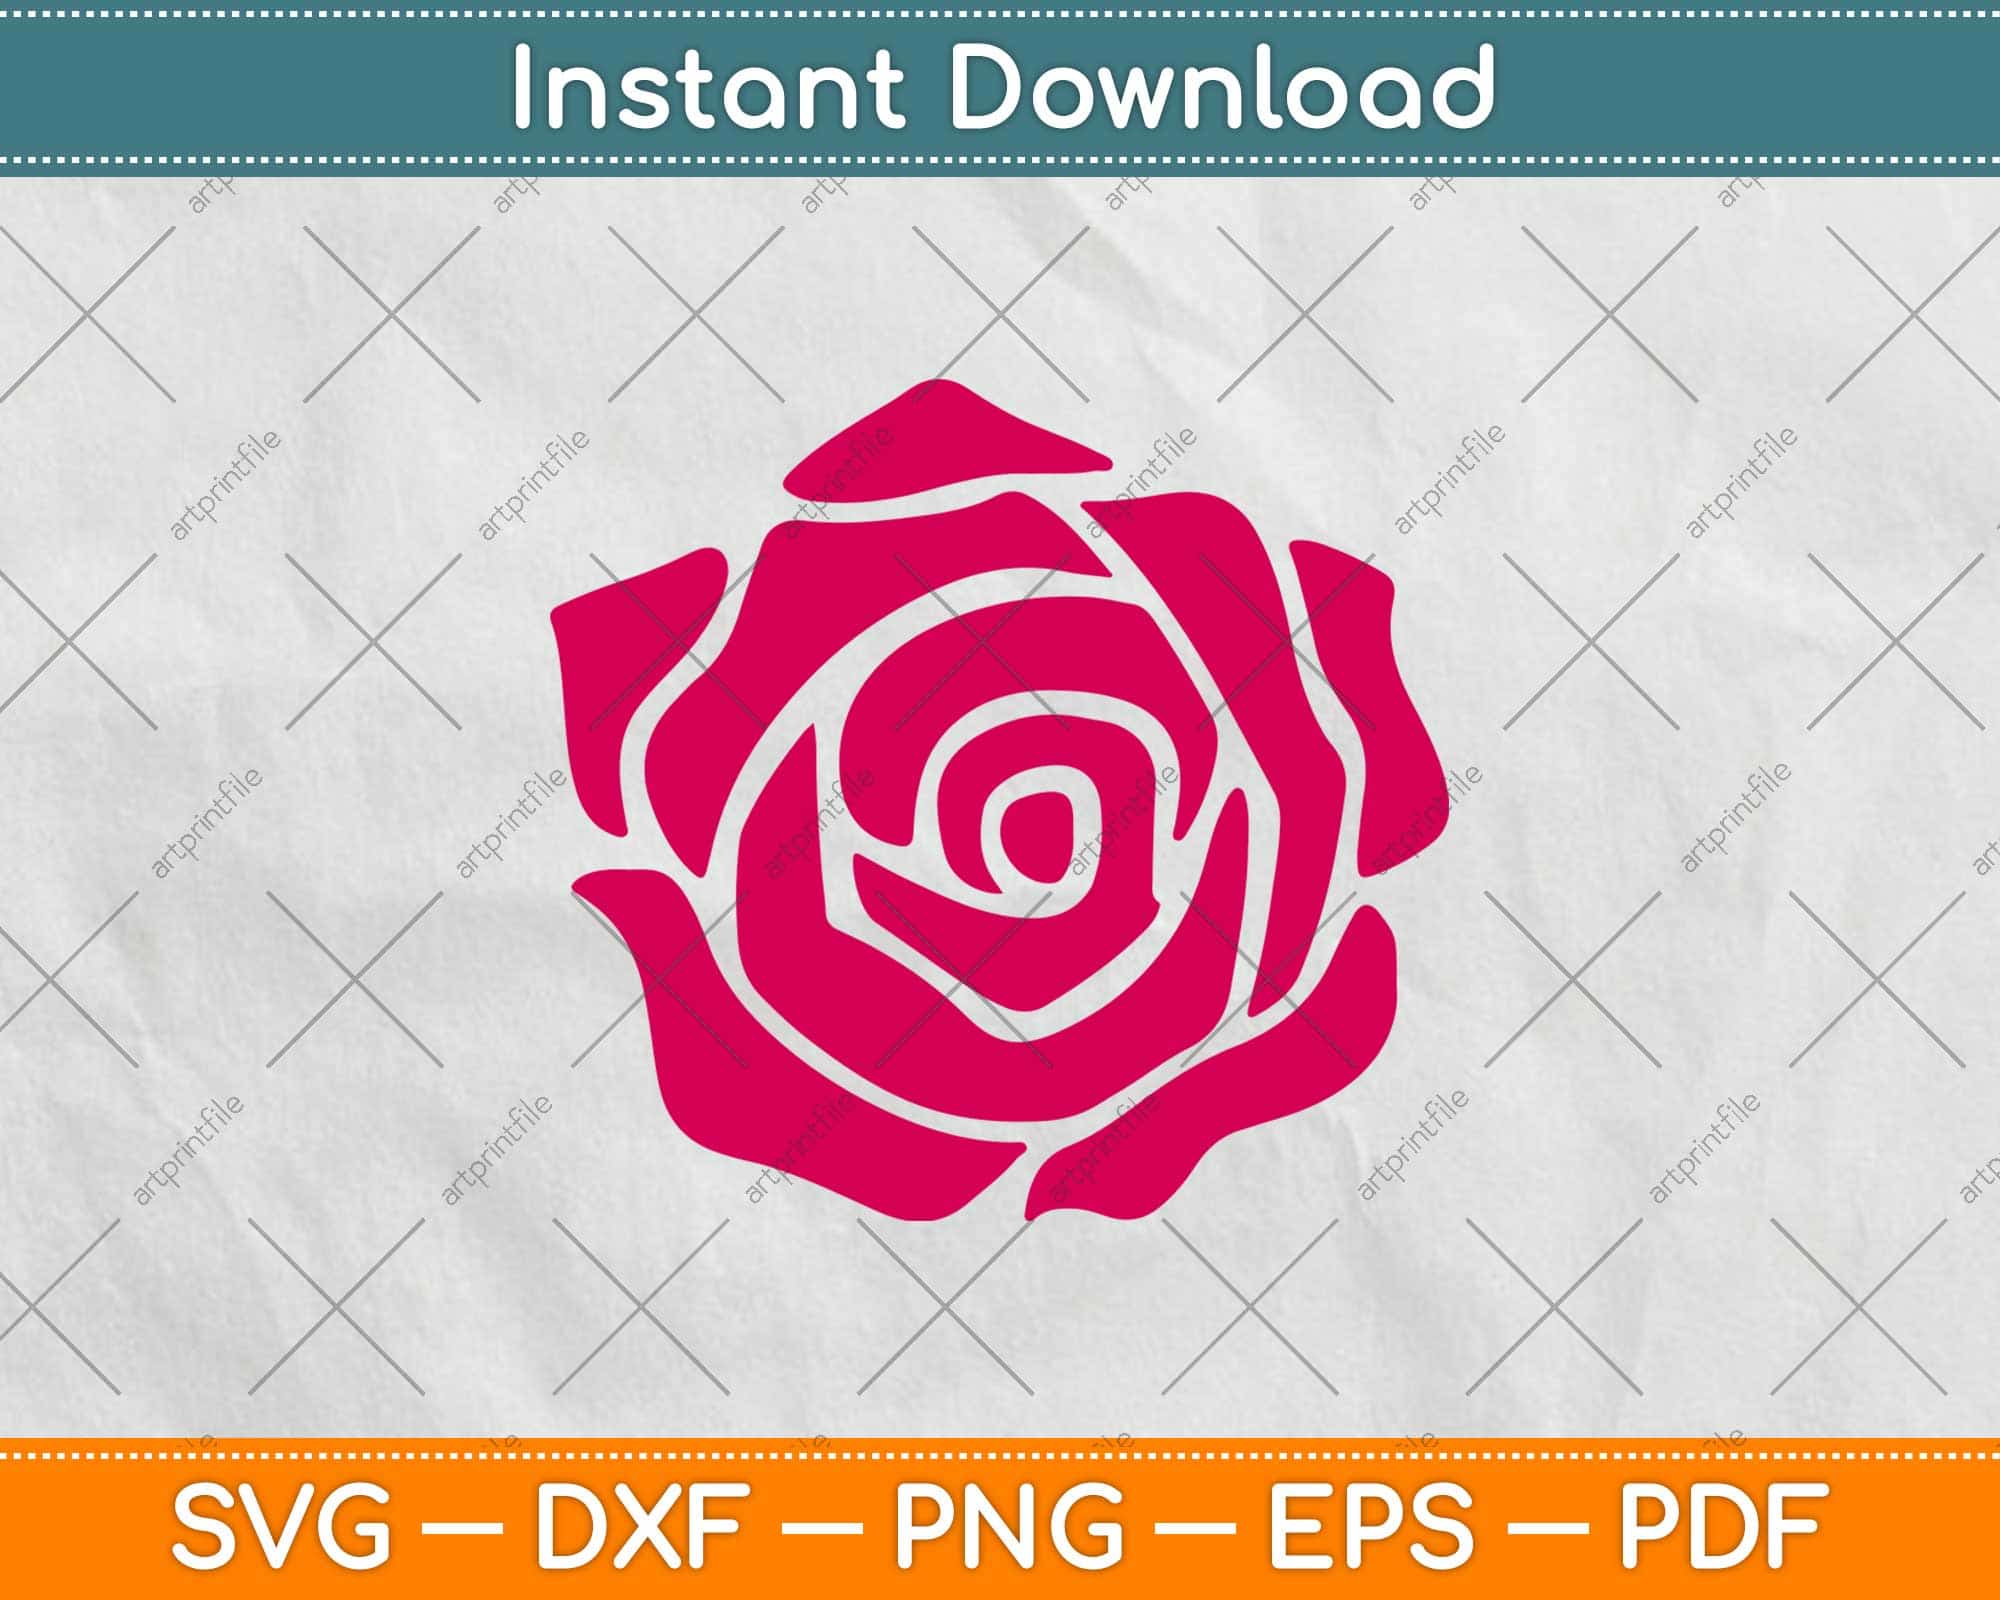 Roses vector. Roses flower. Roses SVG. Roses flower SVG By